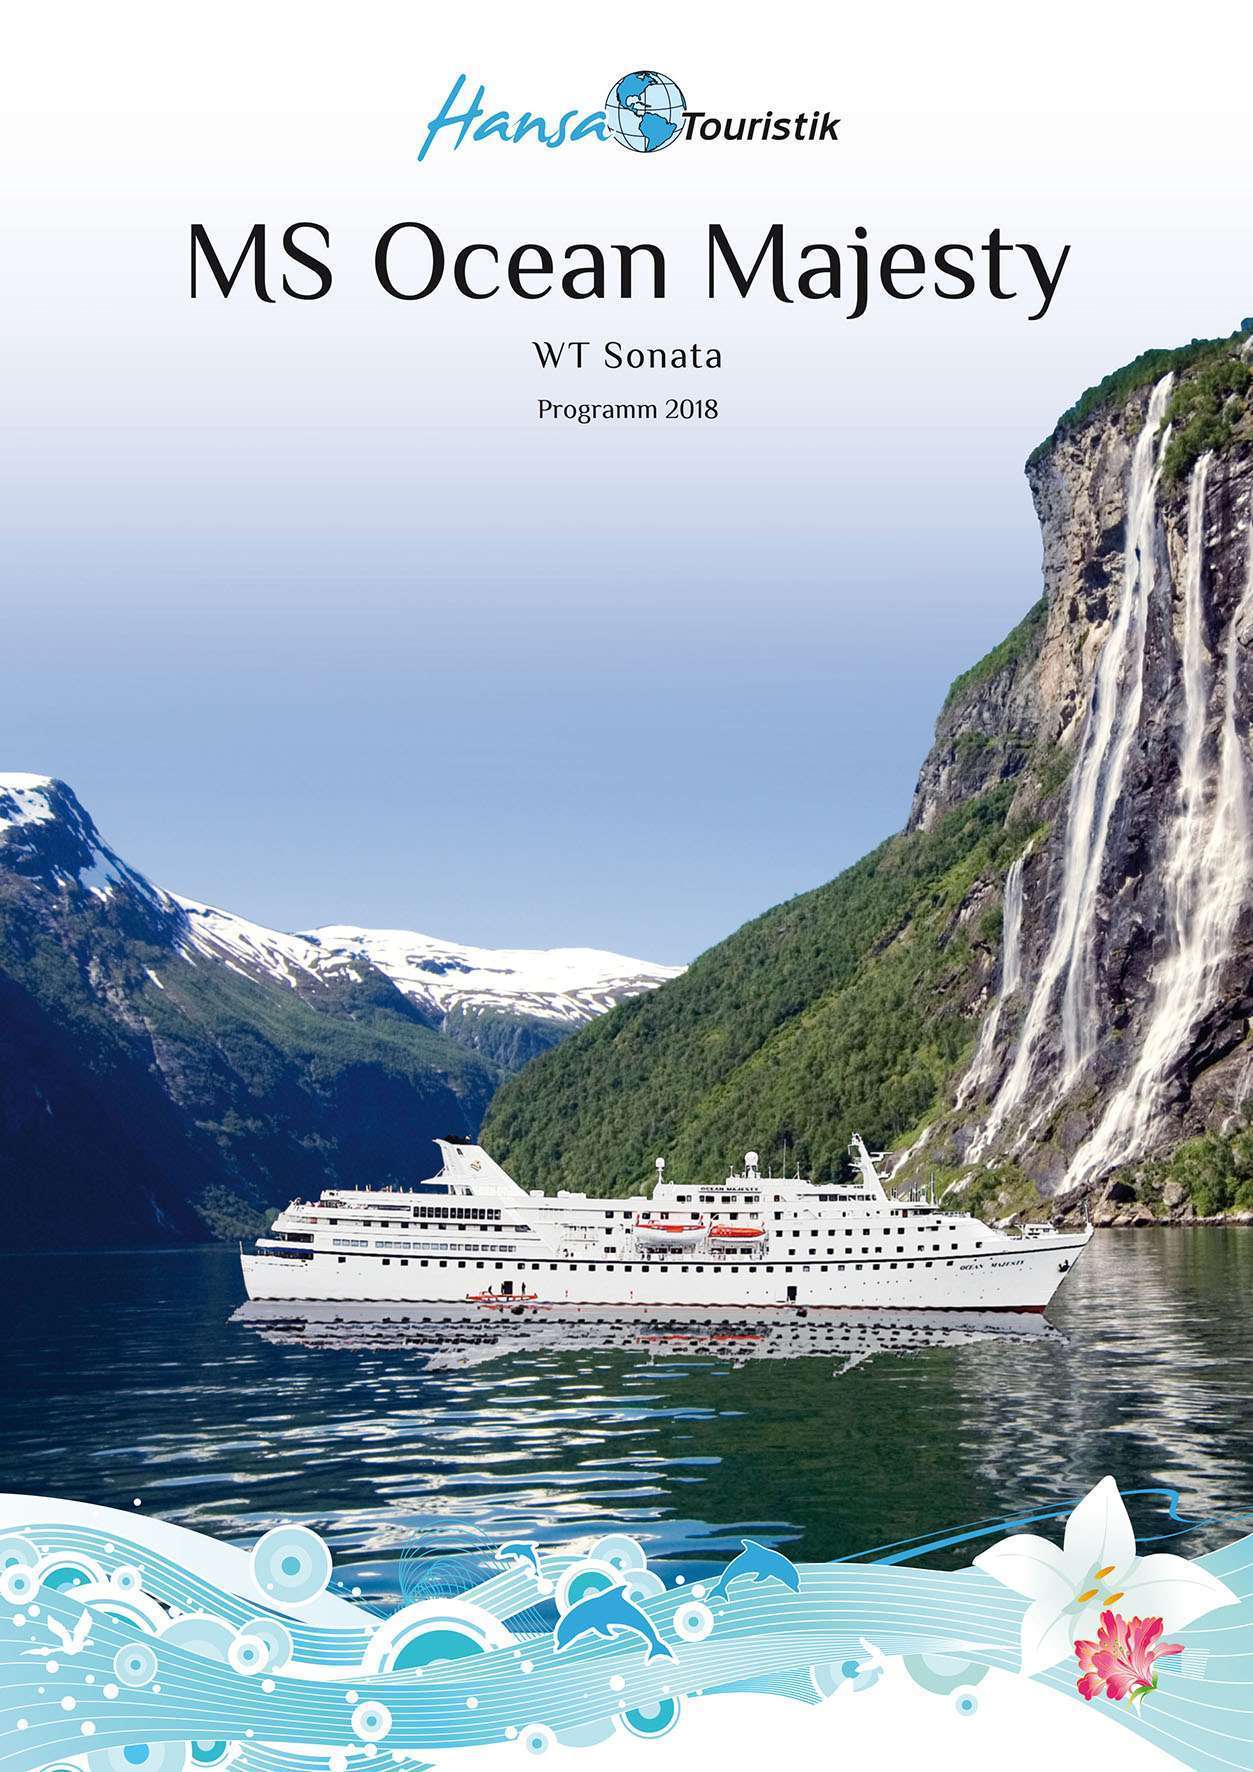 Der neue Hansa Touristik Katalog für die Saison 2018 ist ab sofort erhältlich.  Im Programm sind klassische Hochseereisen mit MS Ocean Majesty.